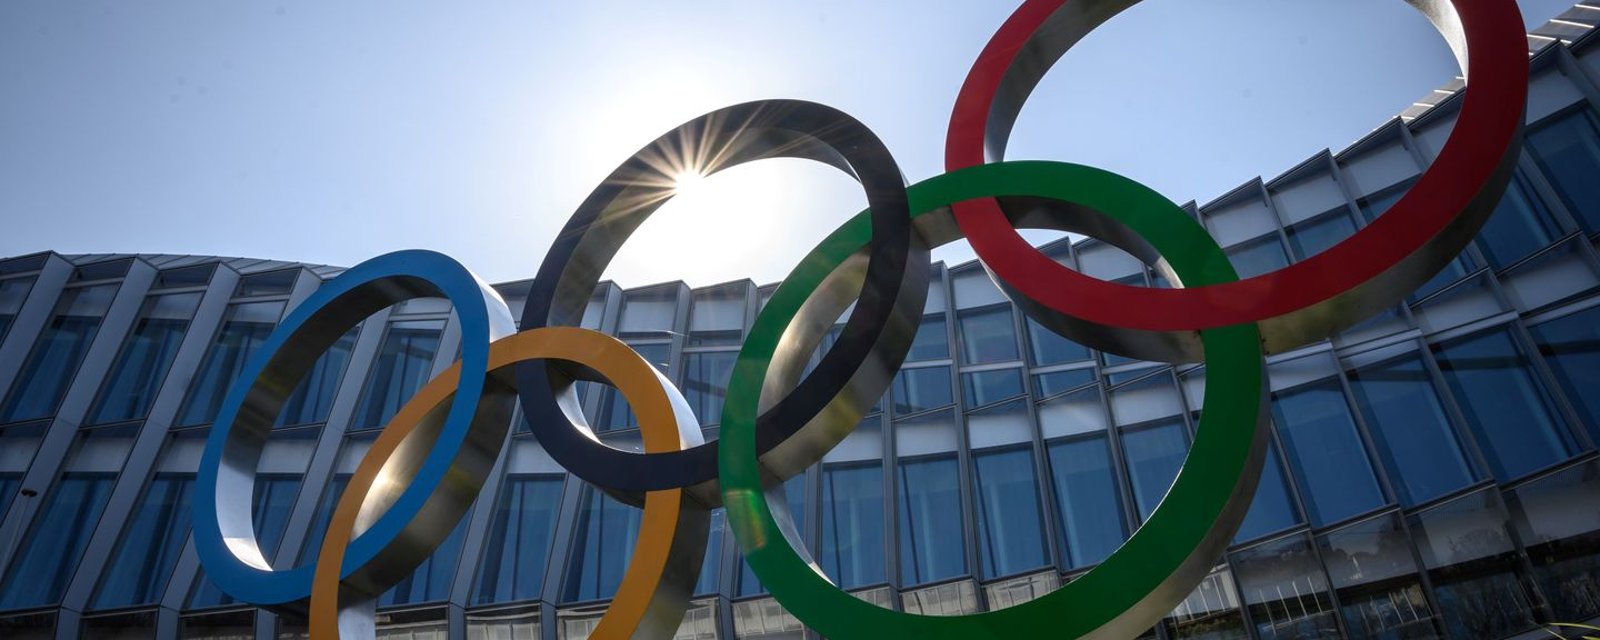 Les Jeux Olympiques de Tokyo seraient annulés